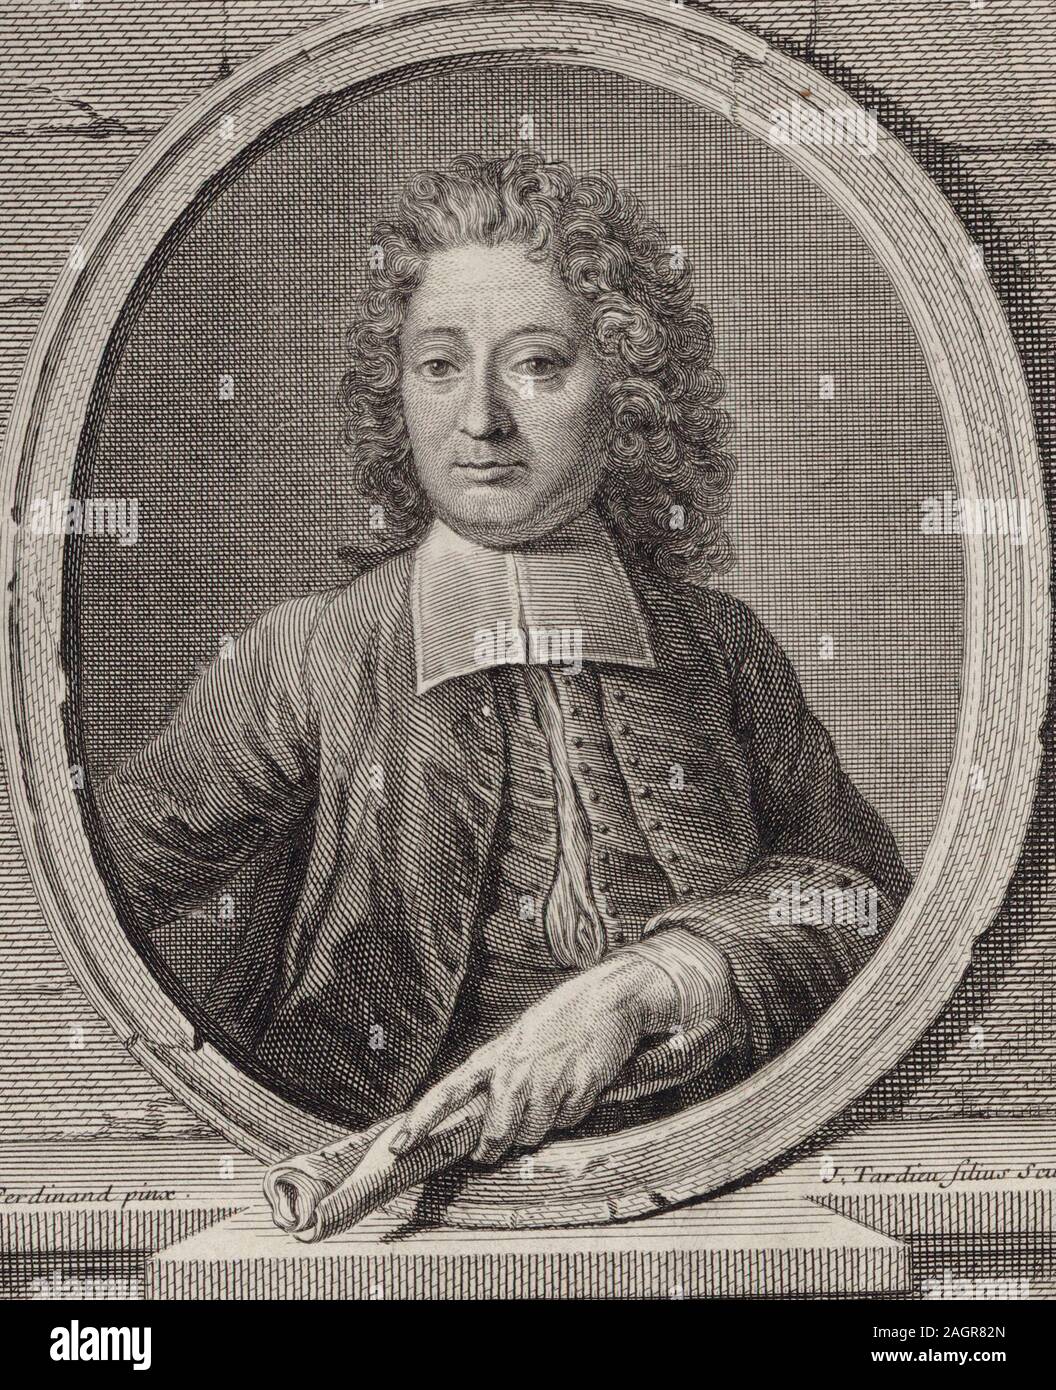 Portrait of the Composer Jean-François Lallouette (1651-1728). Museum: PRIVATE COLLECTION. Author: Jacques-Nicolas Tardieu. Stock Photo